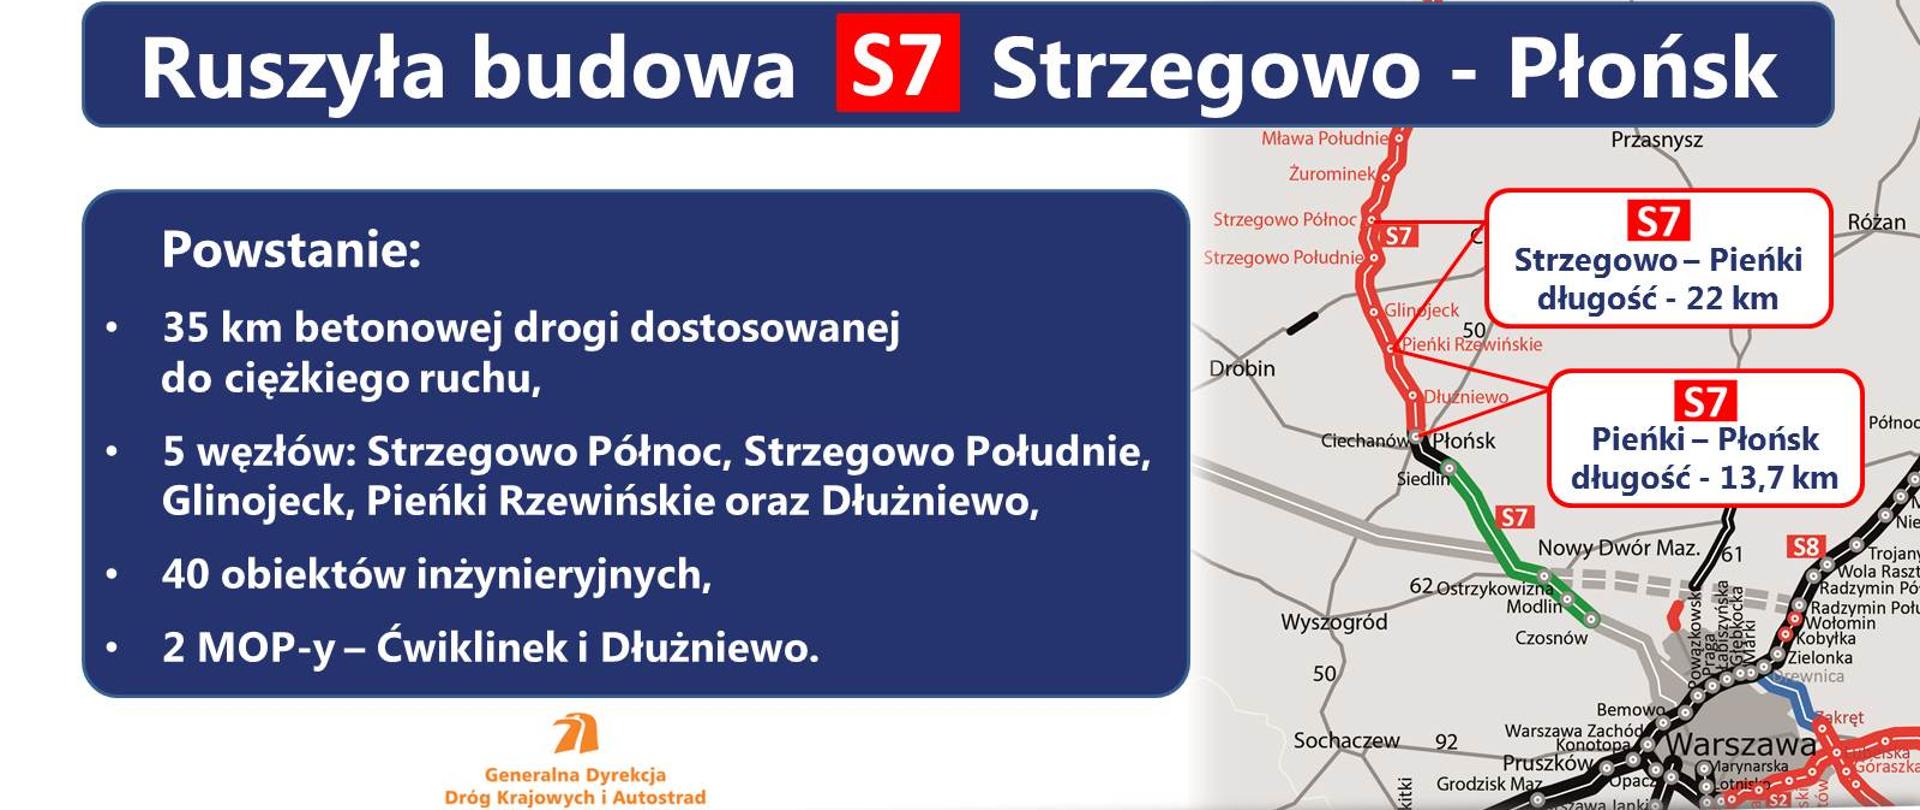 Ruszyła budowa dwóch odcinków drogi S7 na północnym Mazowszu